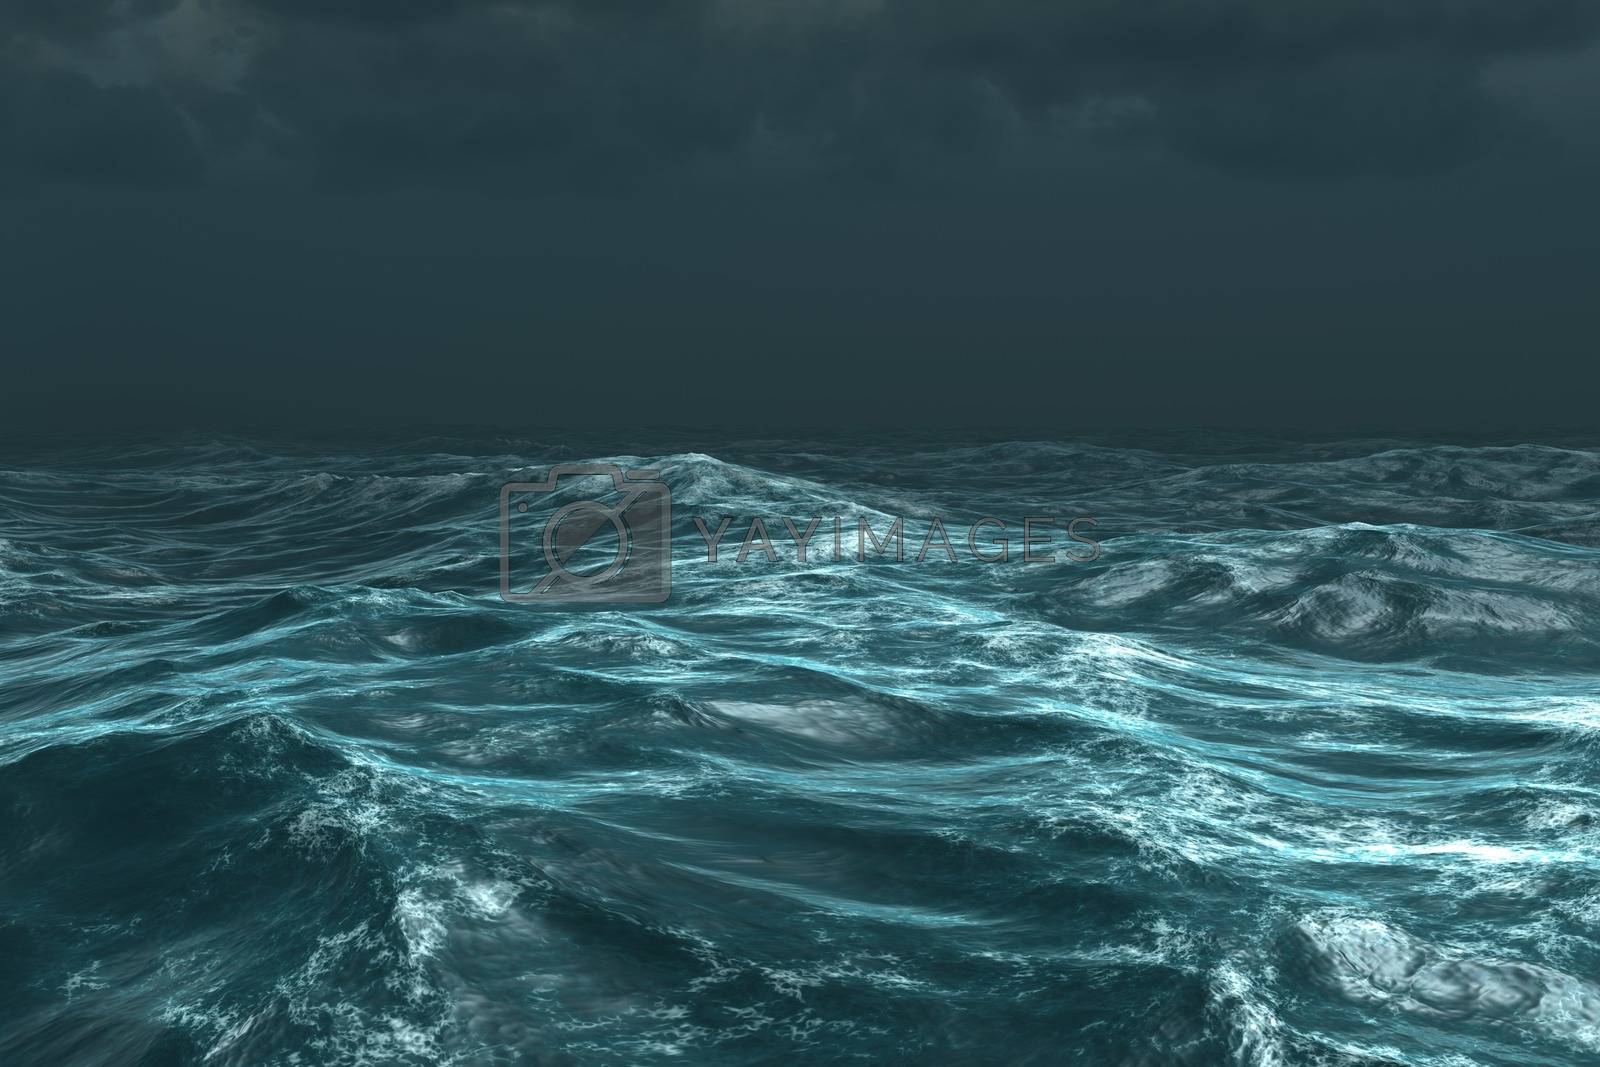 Royalty free image of Rough stormy ocean under dark sky by Wavebreakmedia